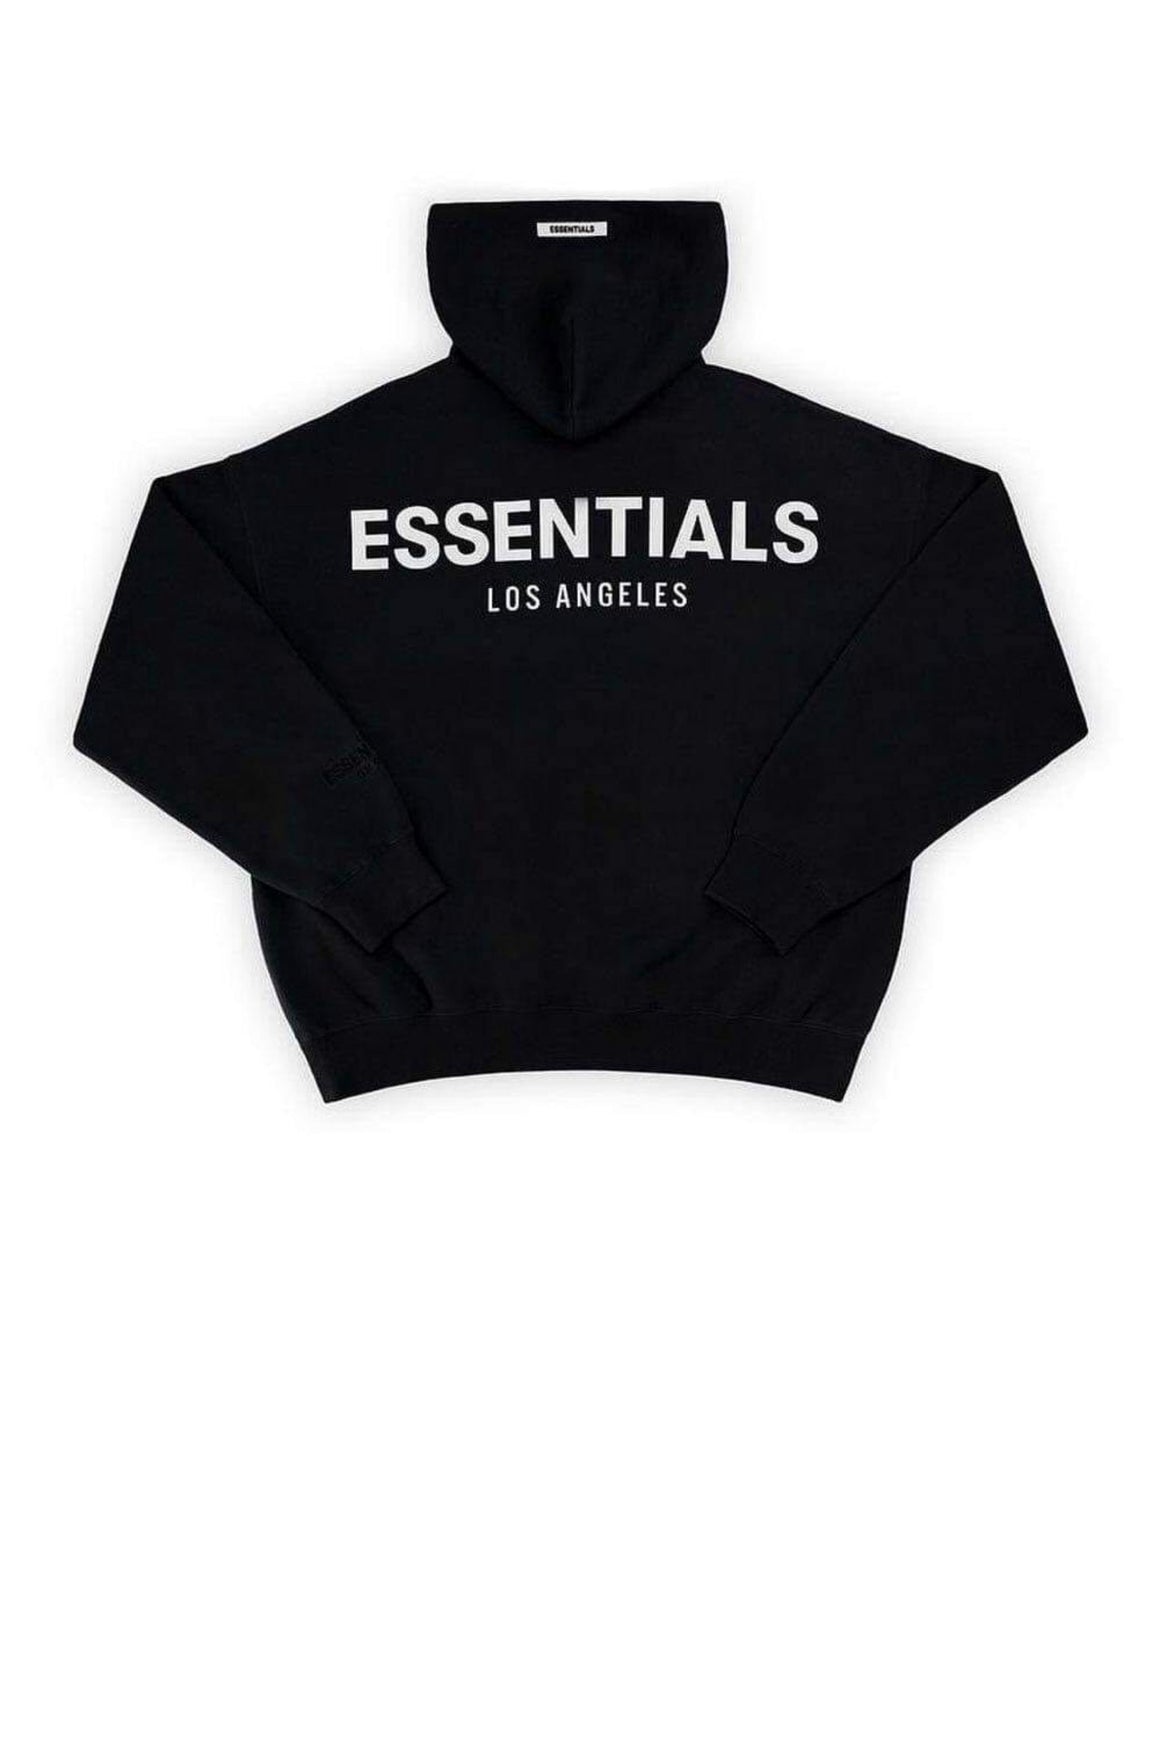 navy fog essentials hoodie